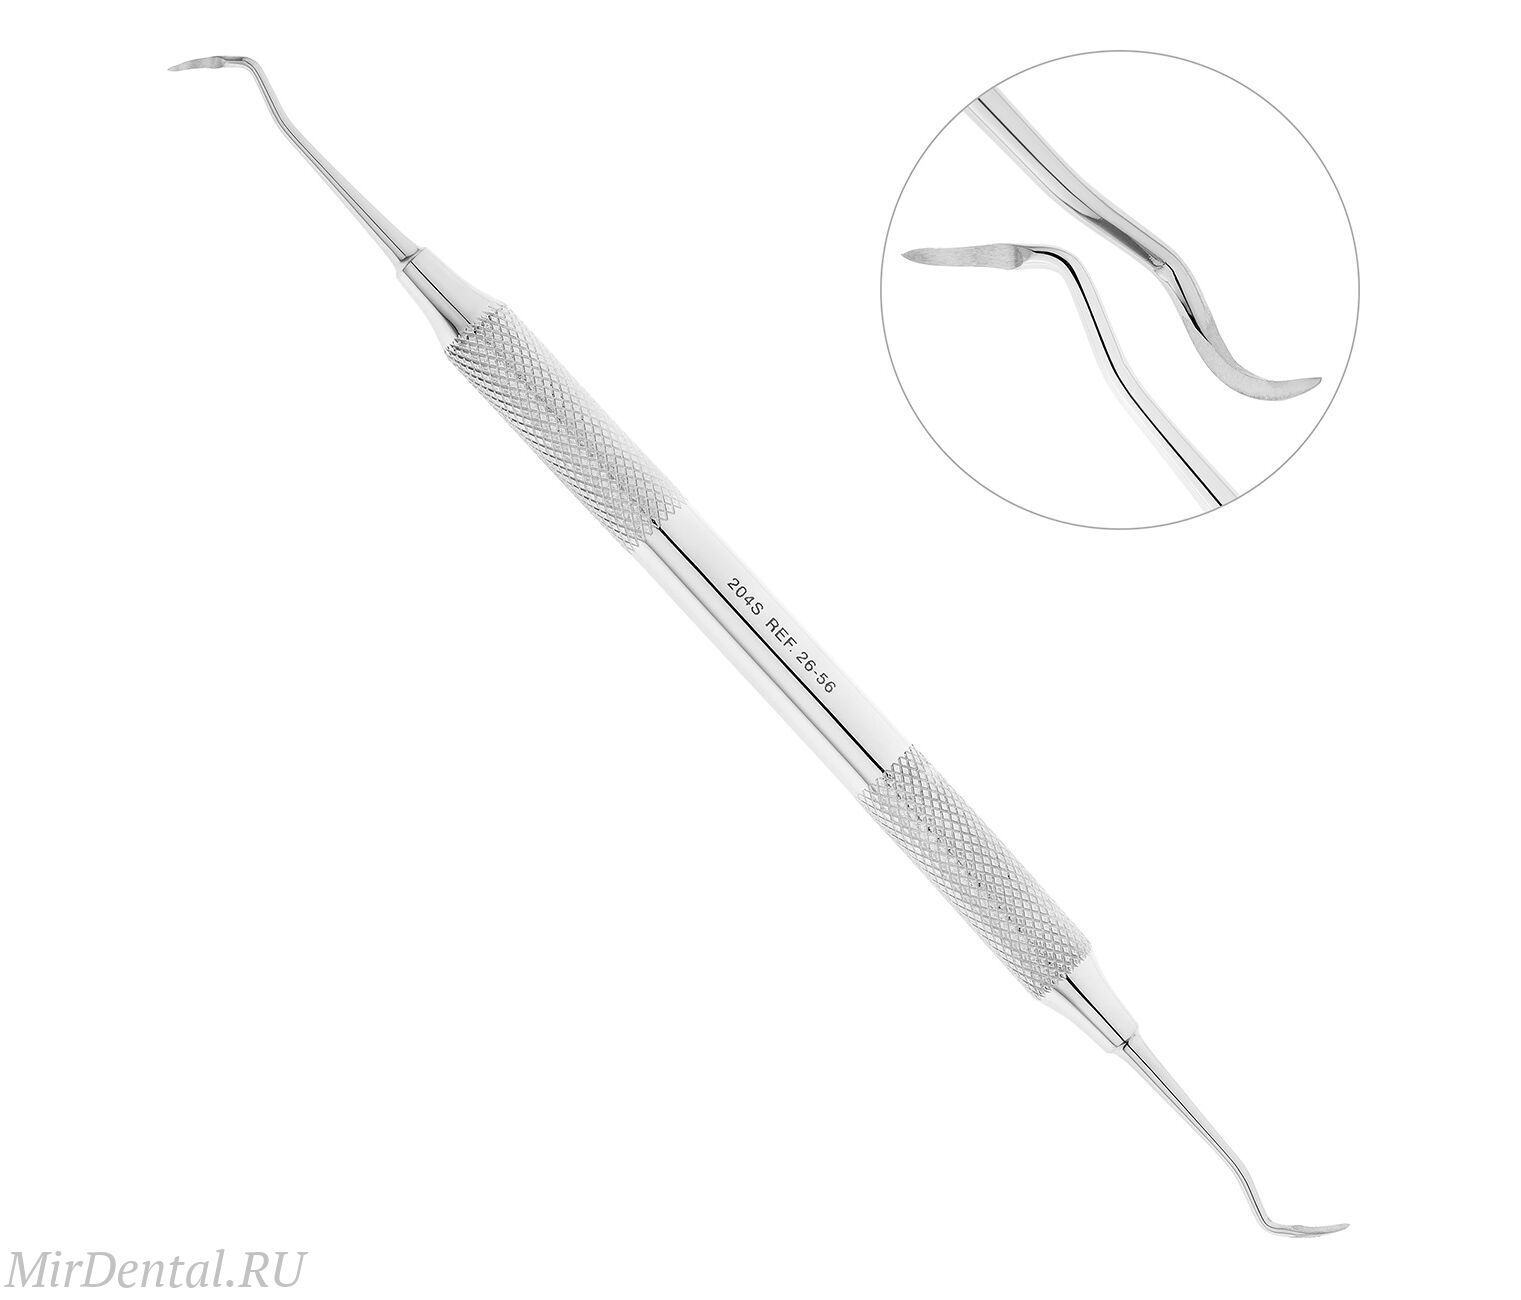 Скейлер парадонтологический, форма 204S, ручка диаметр 8 мм, 26-56*